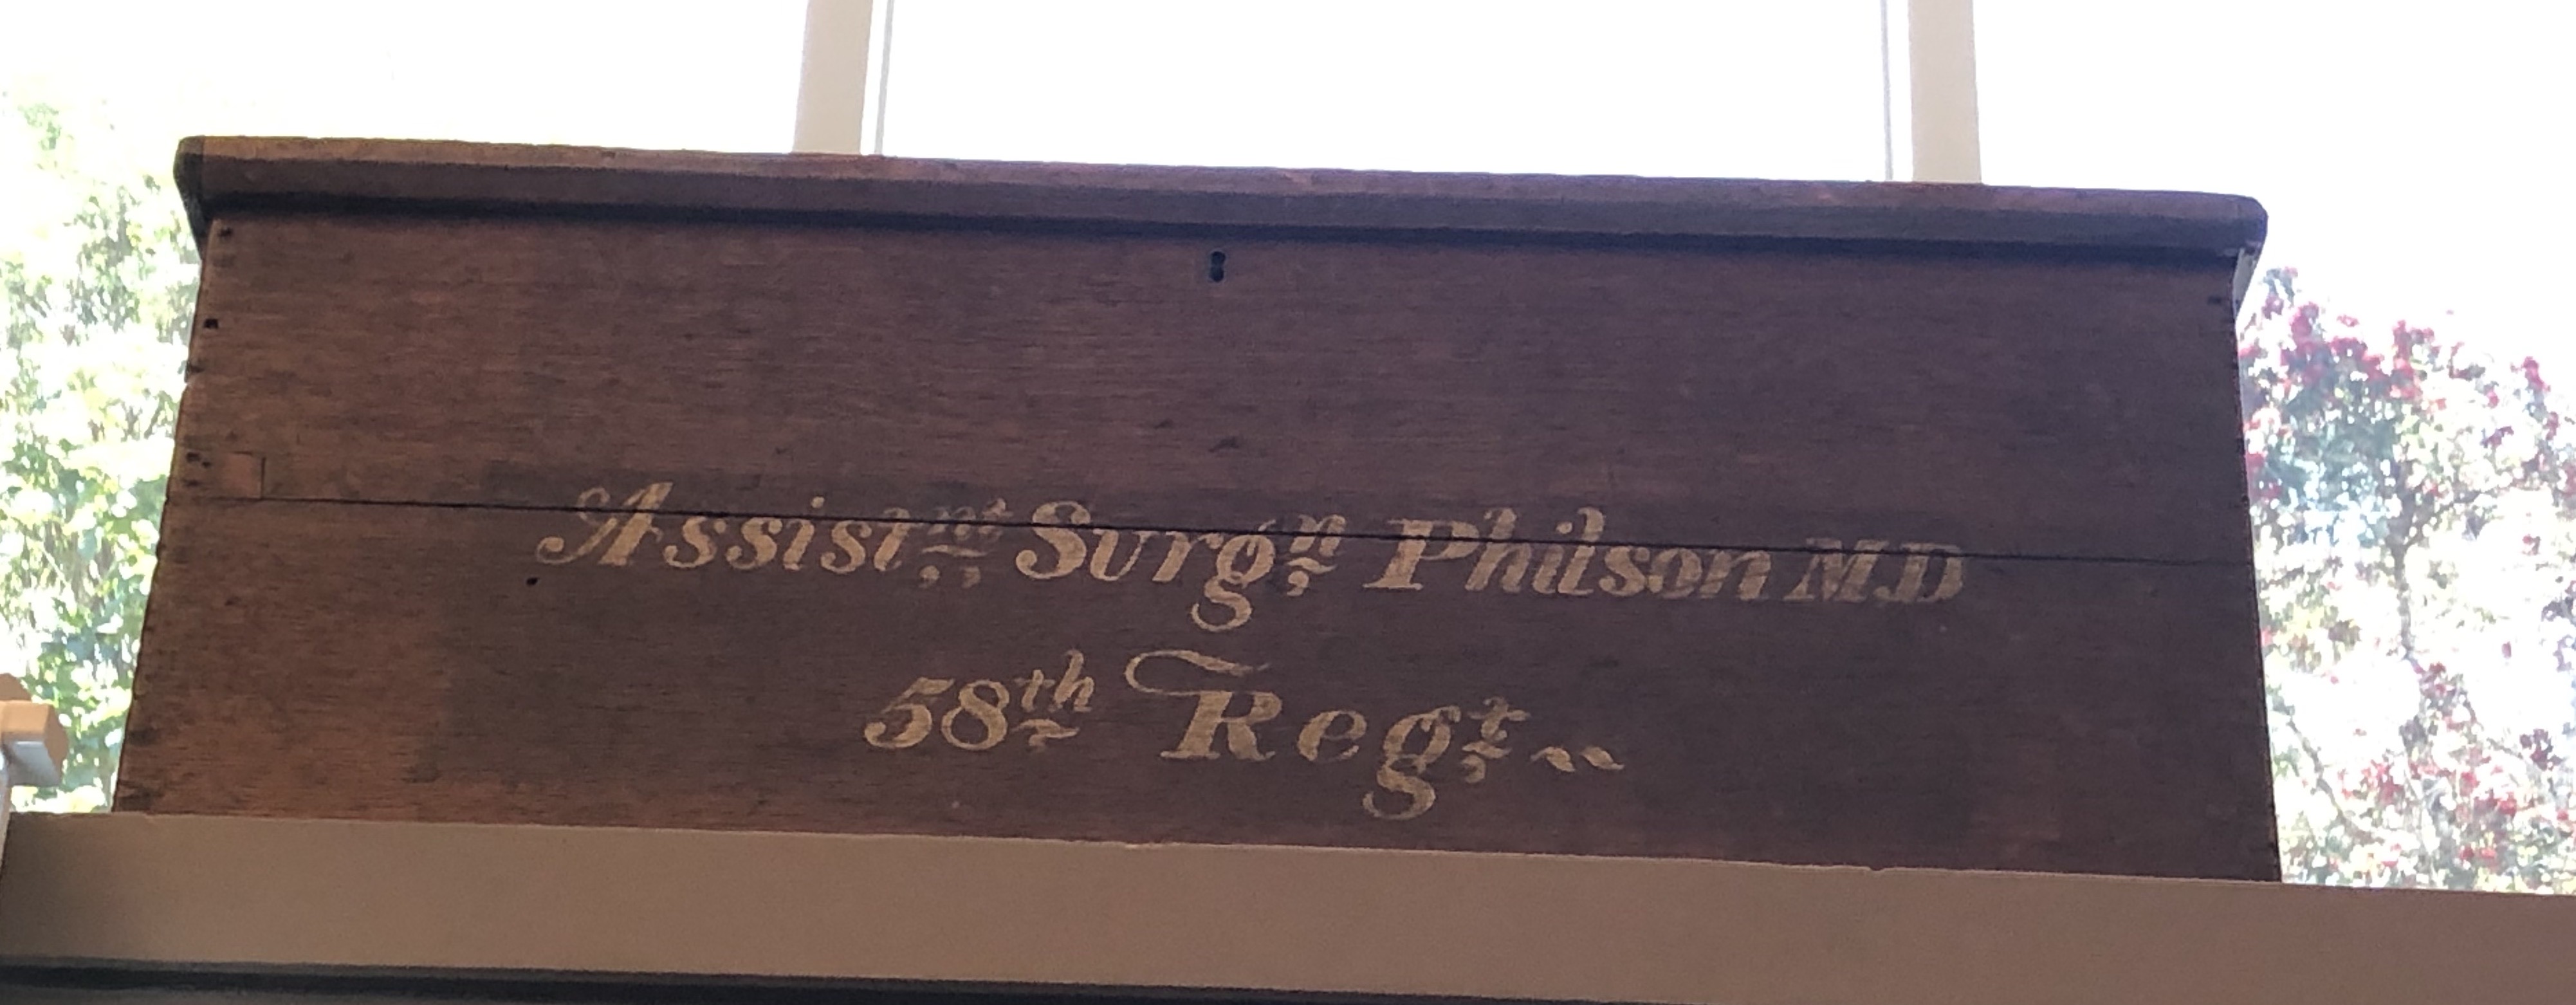 Assistant Surgeon Philson, 58th Regiment 